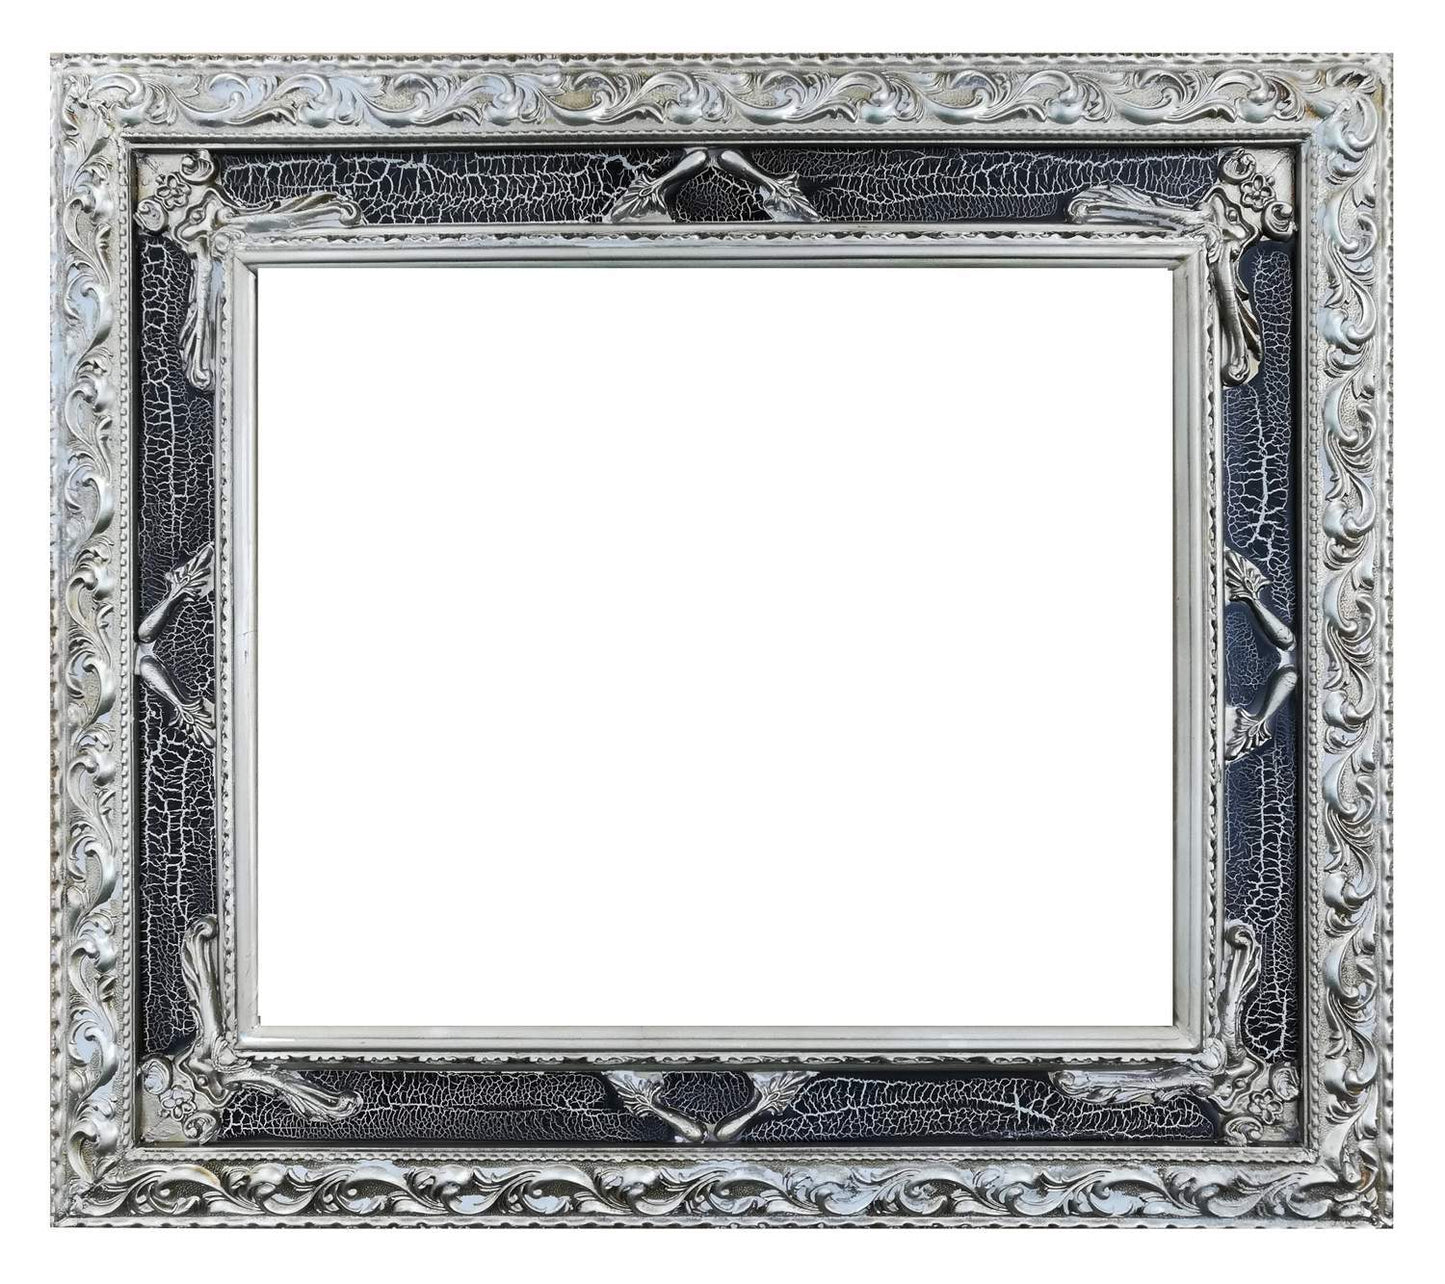 Wooden frame, 50x60 cm